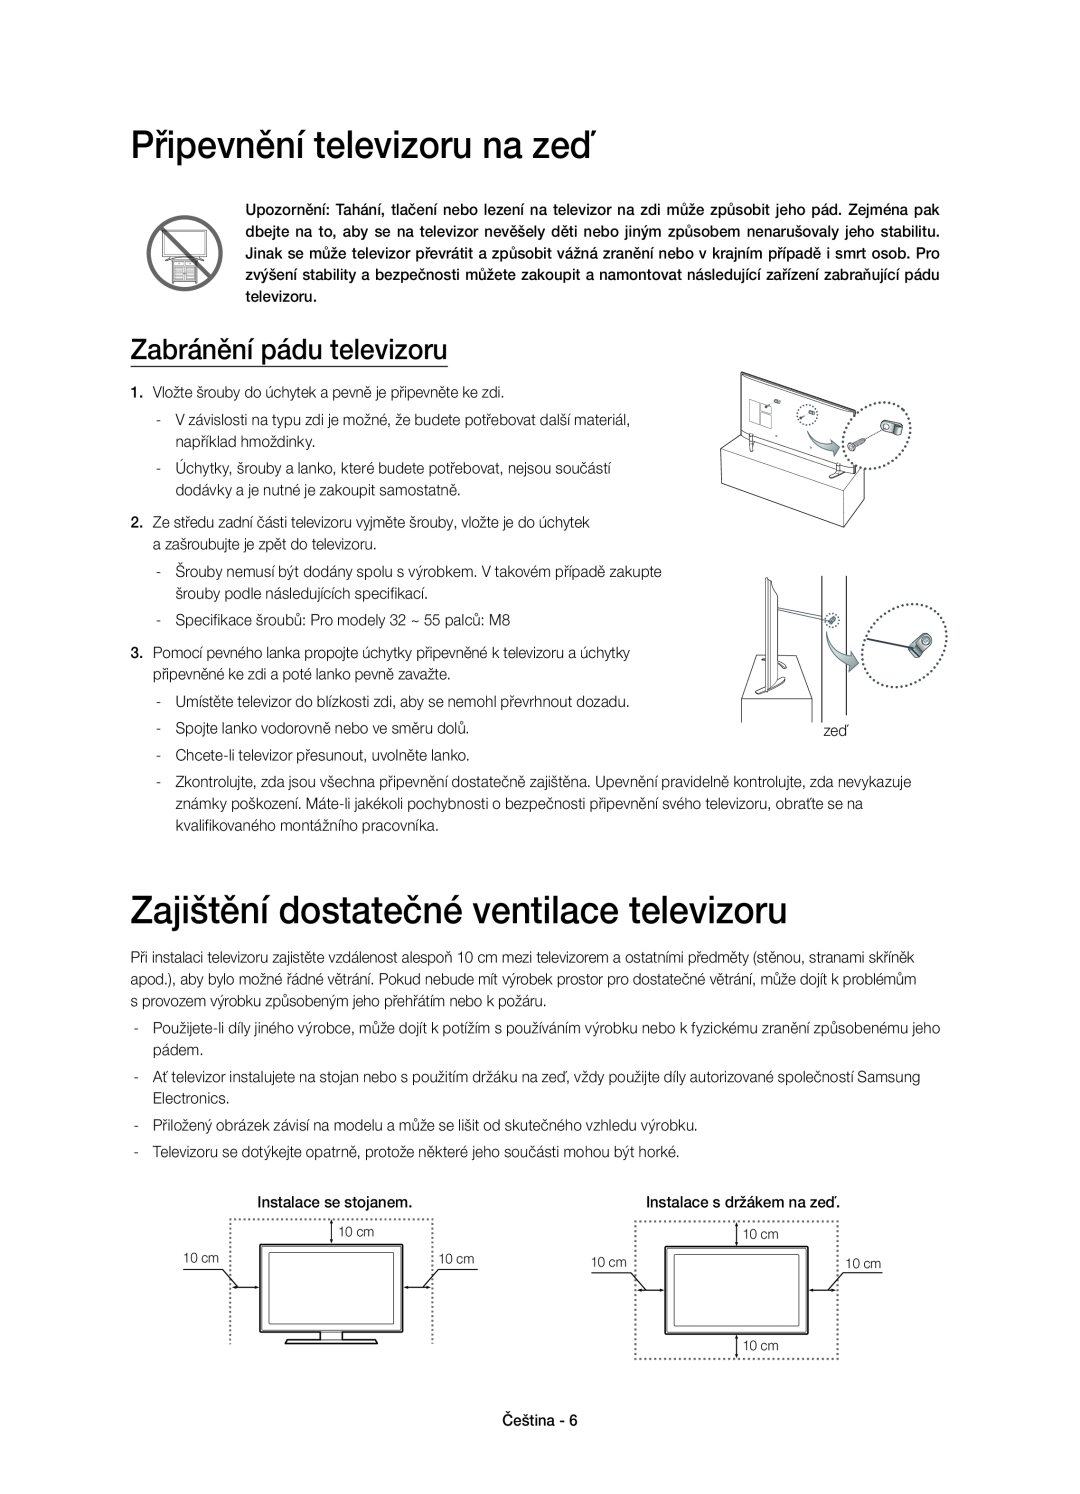 Samsung UE55H6410SUXXU Připevnění televizoru na zeď, Zajištění dostatečné ventilace televizoru, Zabránění pádu televizoru 